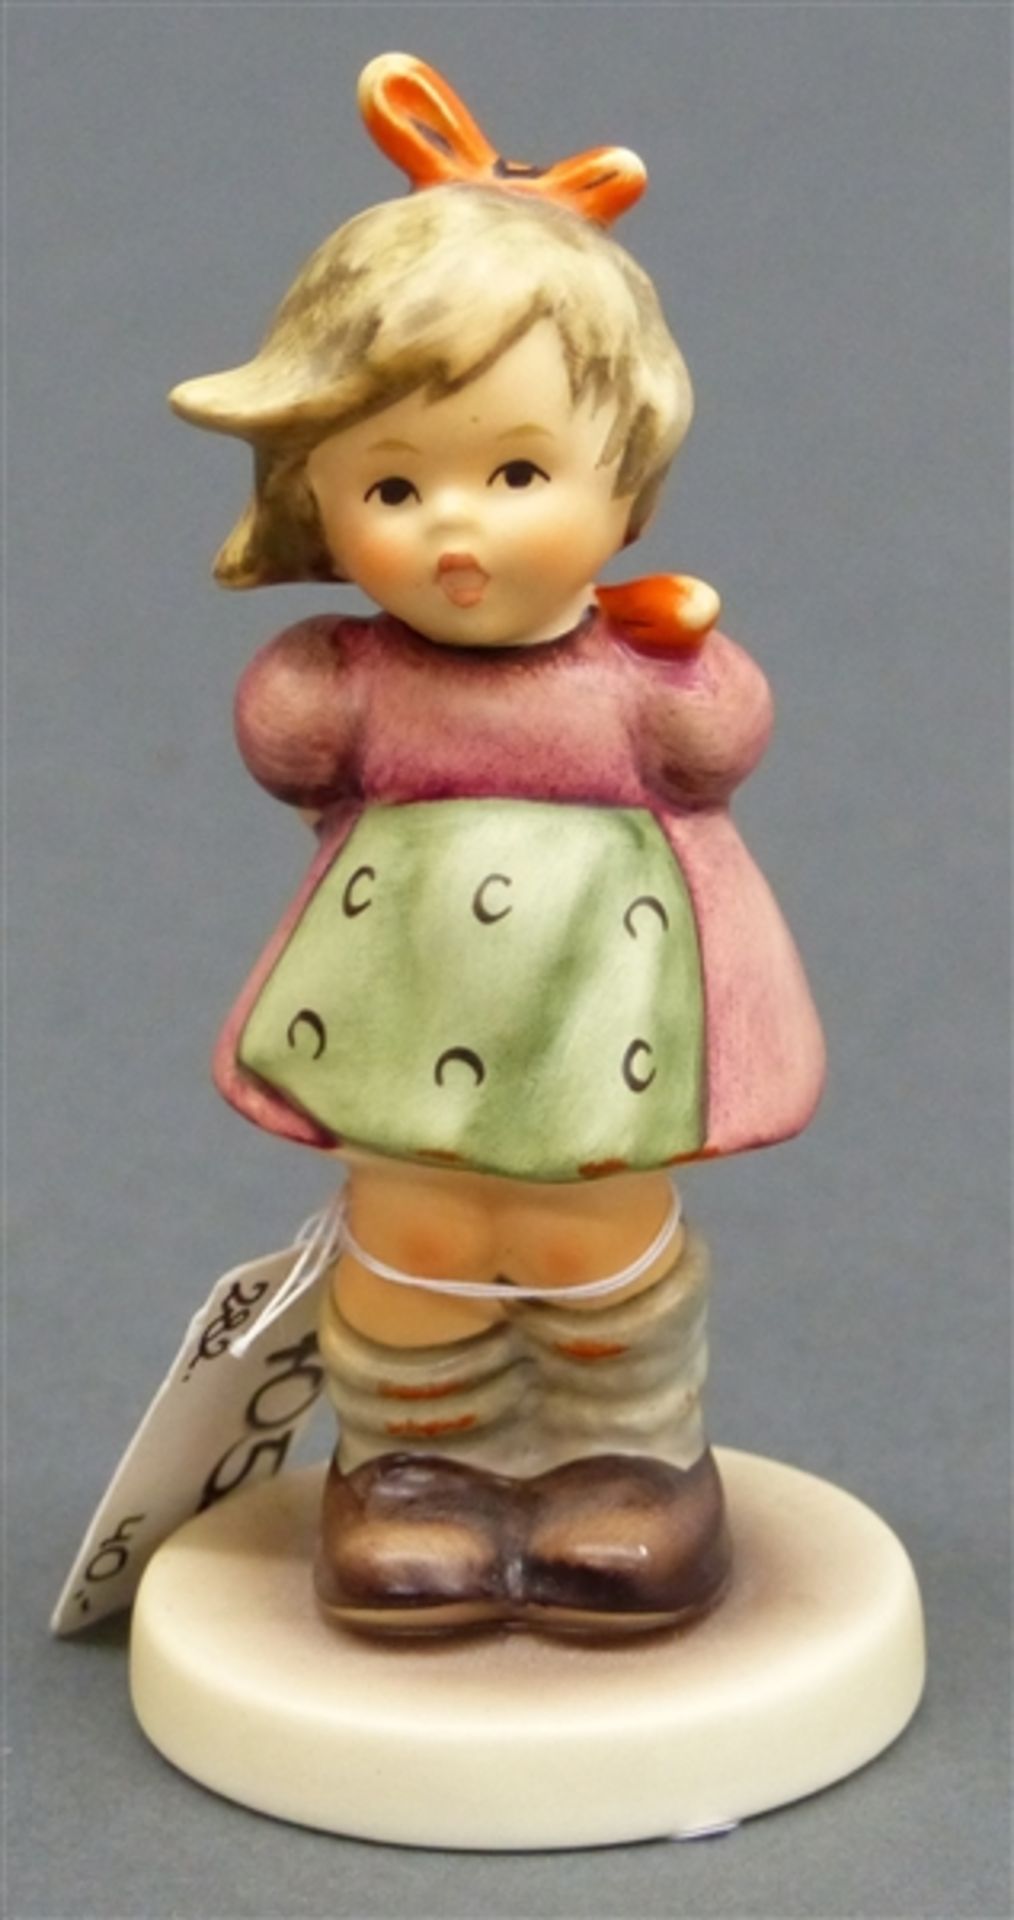 Hummelfigur Porzellan, Manufaktur Goebel, bemalt, "Ich mag nicht", No. 564, FM 7, h 9,5 cm,